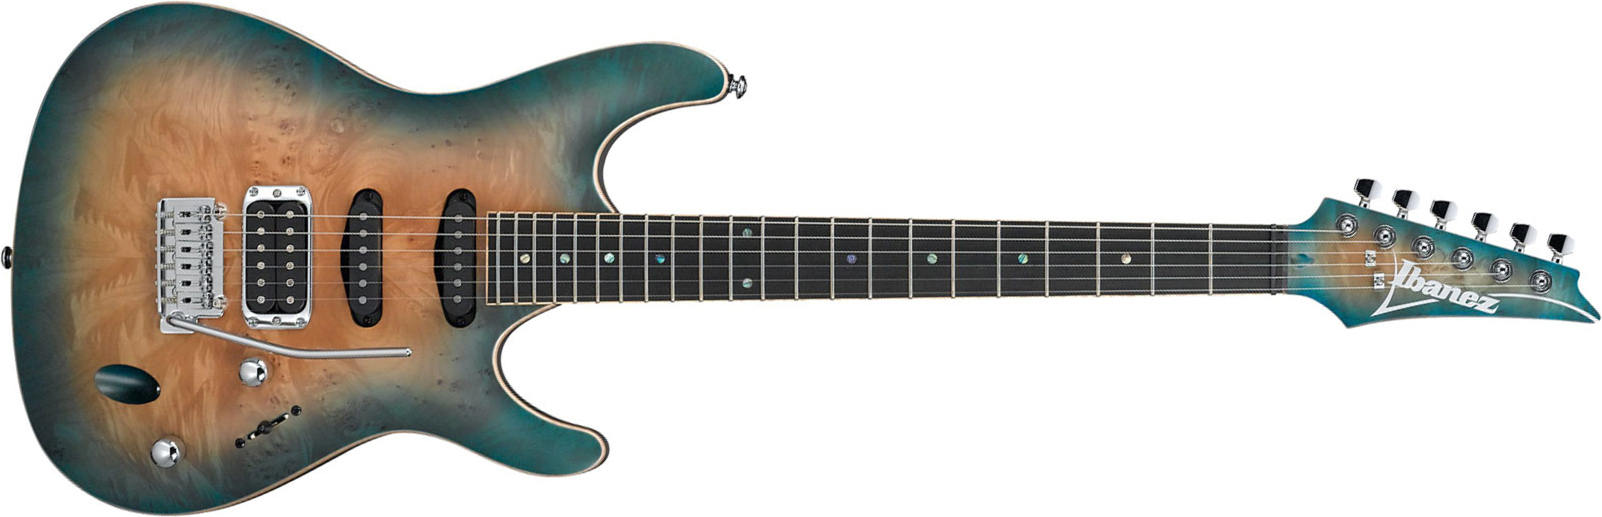 Ibanez Sa460mbw Sub Standard Hss Trem Eb - Sunset Blue Burst - Guitarra eléctrica con forma de str. - Main picture